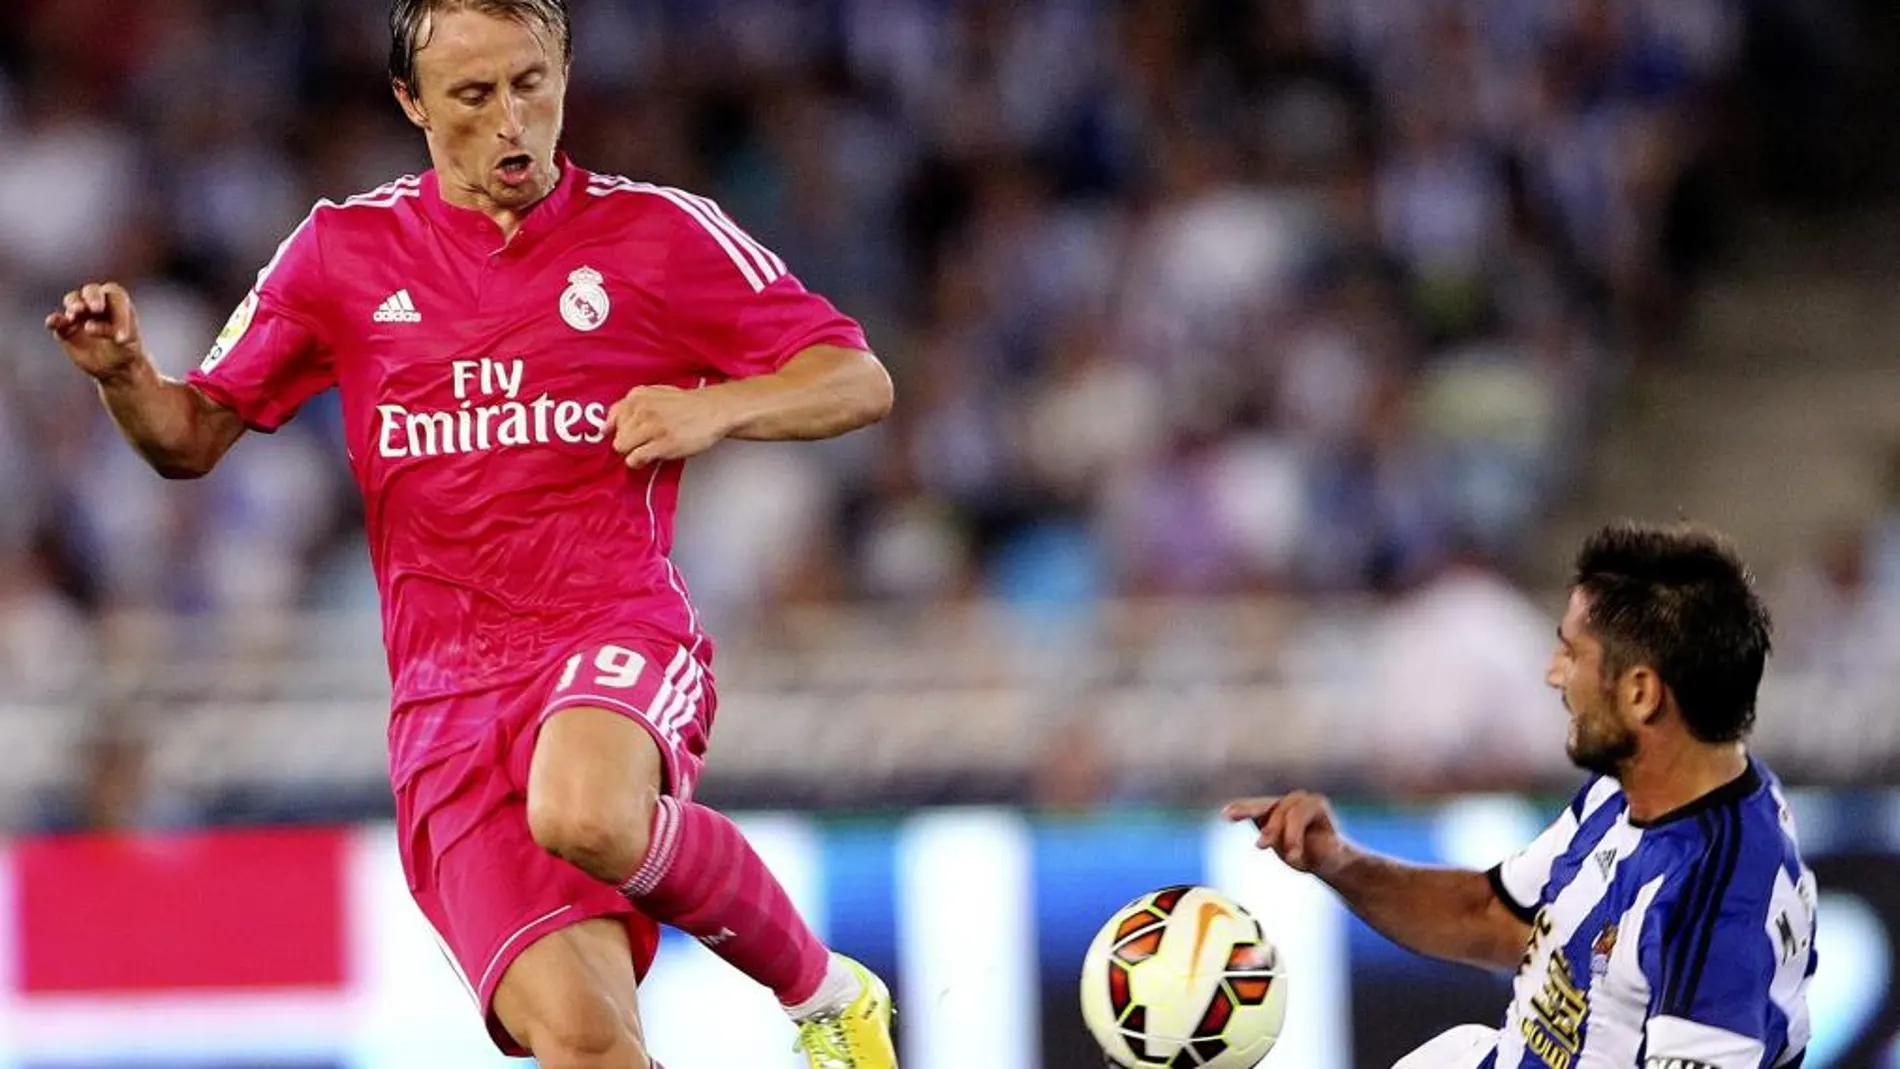 El madridista Luka Modric disputa un balón con el jugador de la Real Sociedad, Markel Bergara